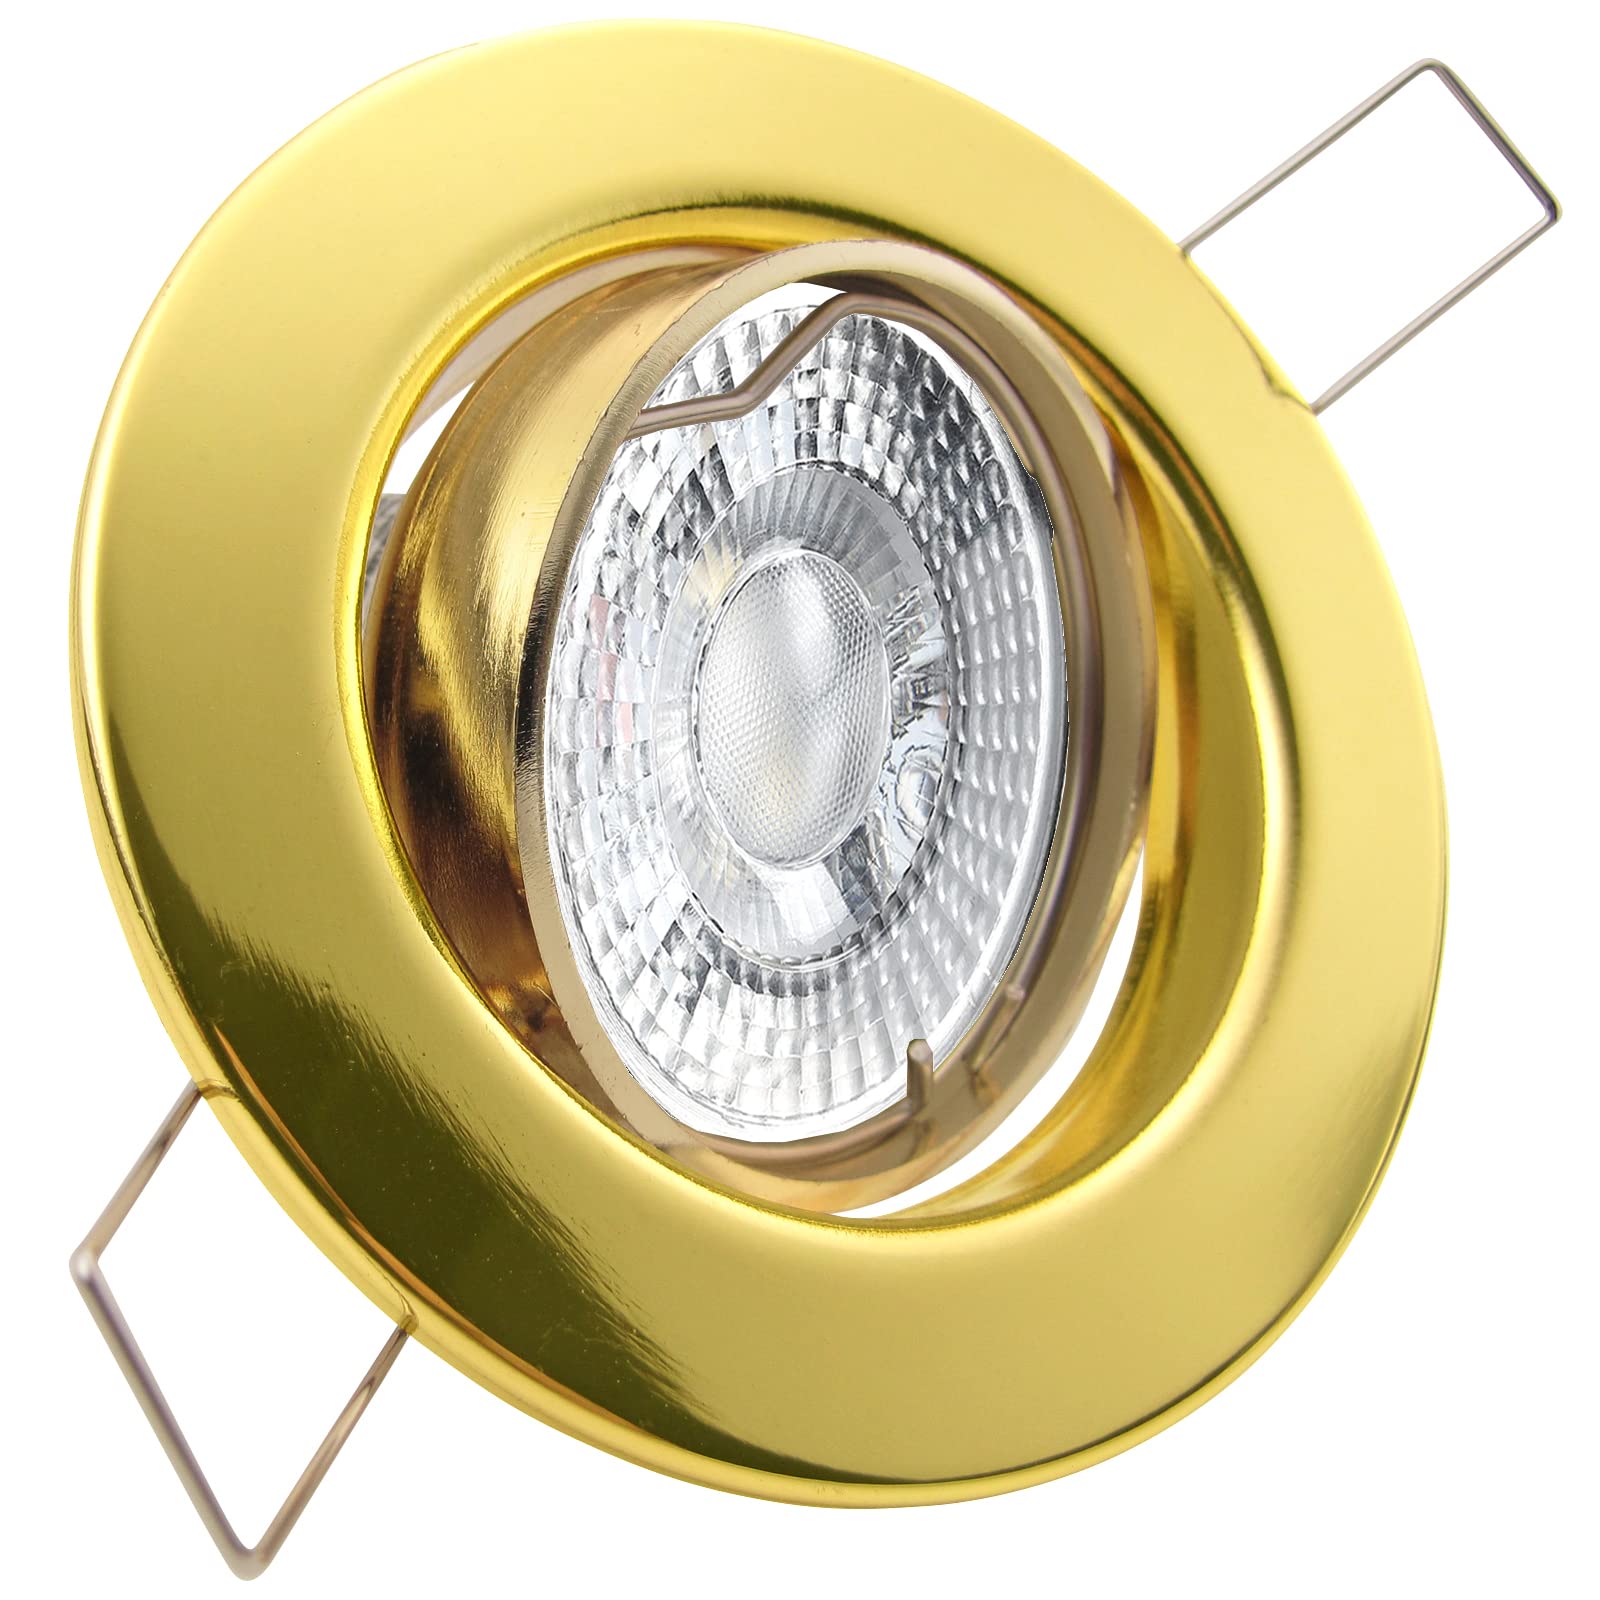 trendlights24 Decora LED Einbaustrahler 230V Gold Messing rund 5er Set - Spots 4W 405 lm 38-45° GU10 Neutralweiß - Decken Einbauleuchte schwenkbar